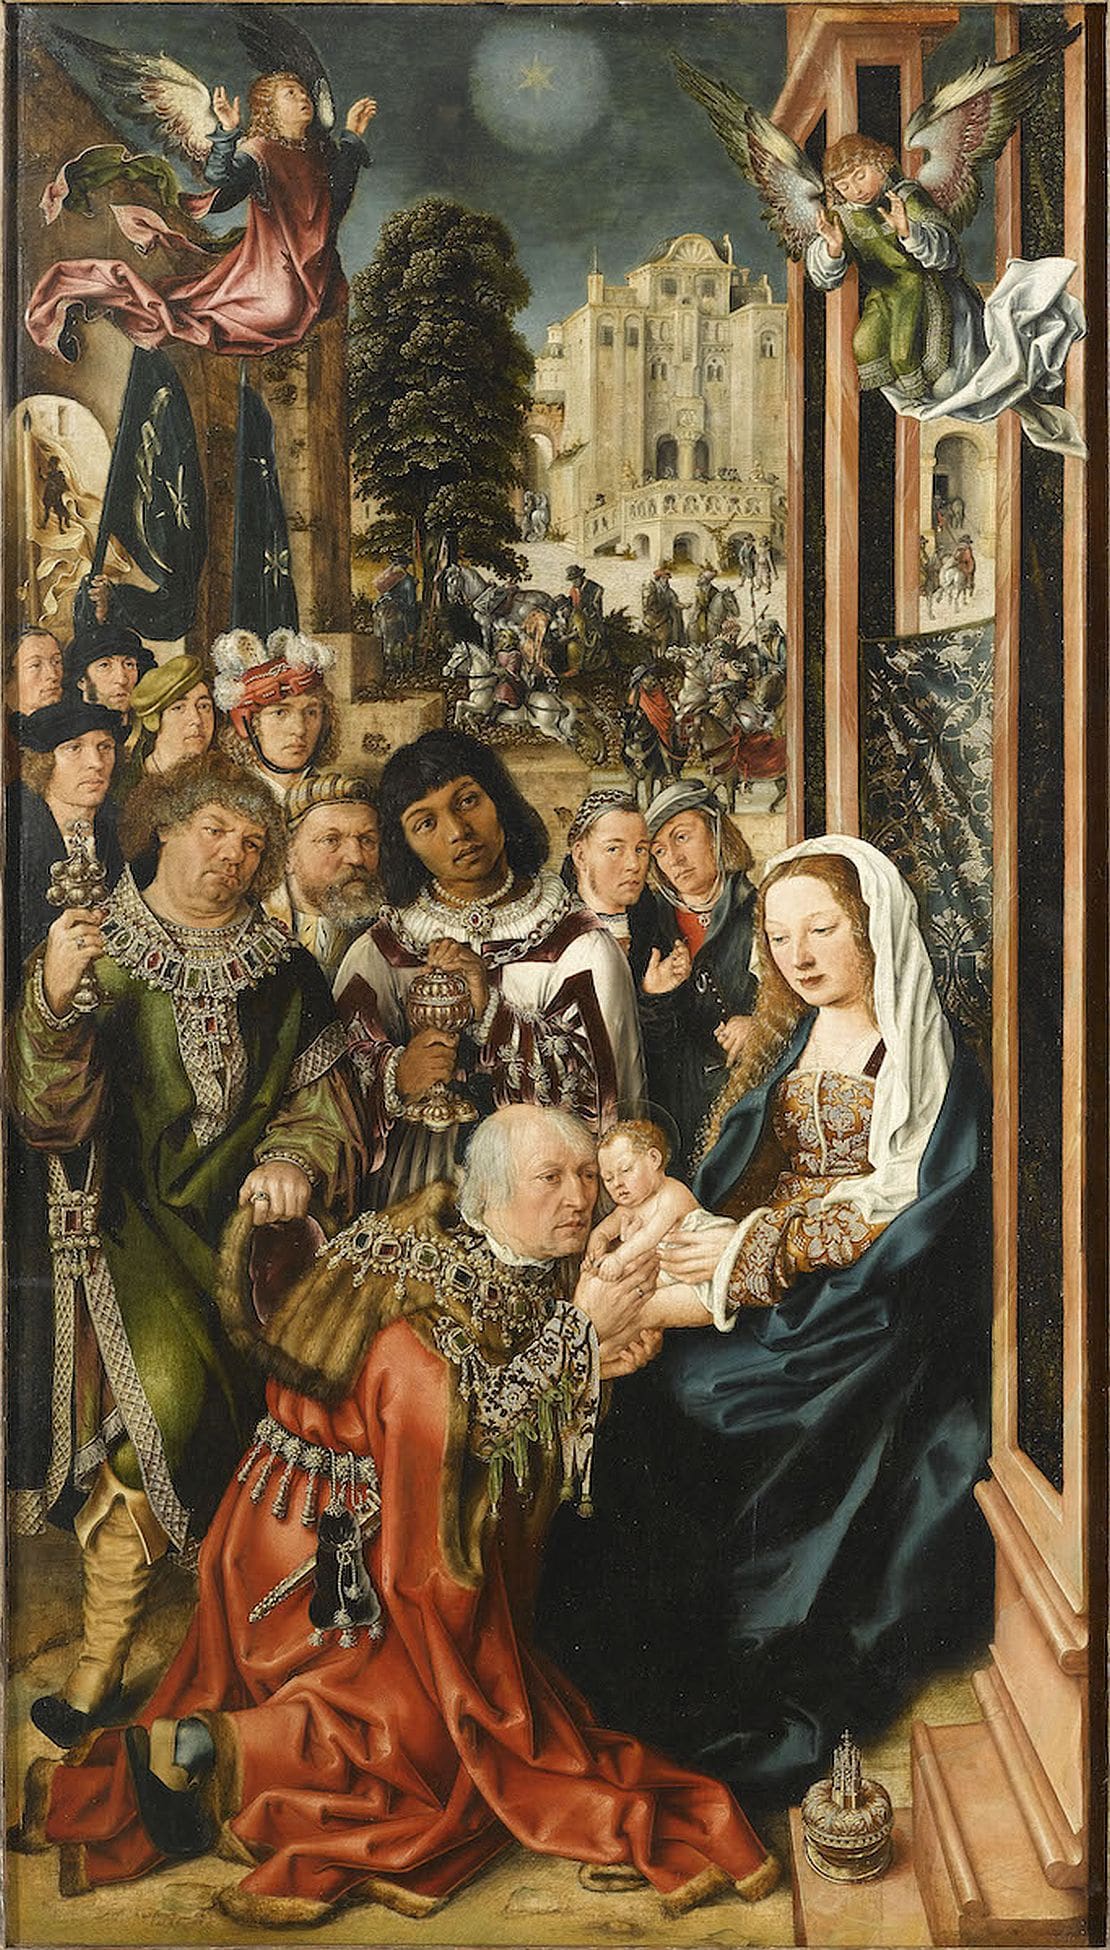 Gemälde Anbetung der Könige von Ulrich Apt von 1510